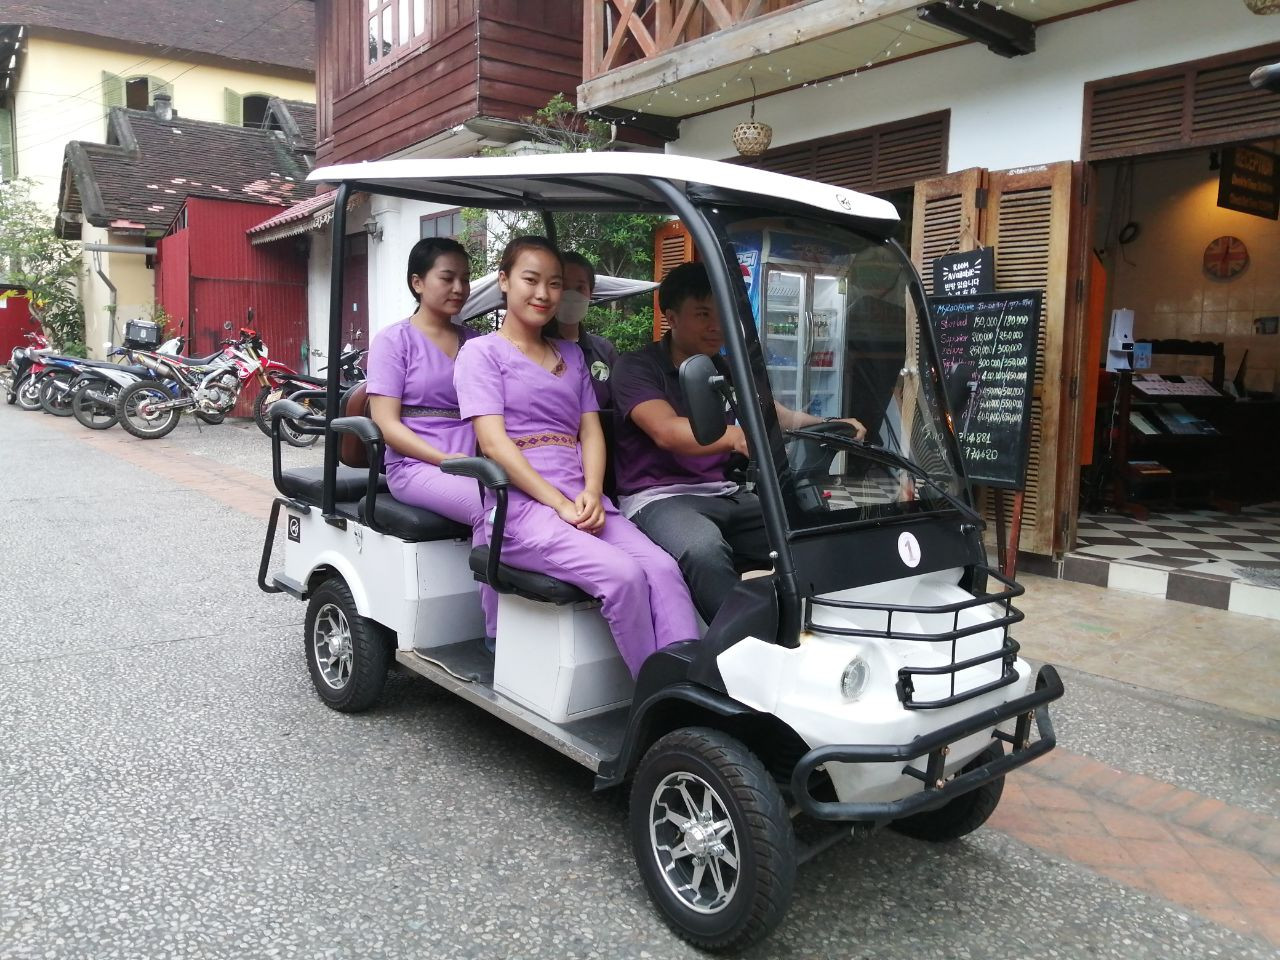 燃油危机及帮助MyLaoHome酒店和Discover Laos Today员工的措施 由于当前的问题